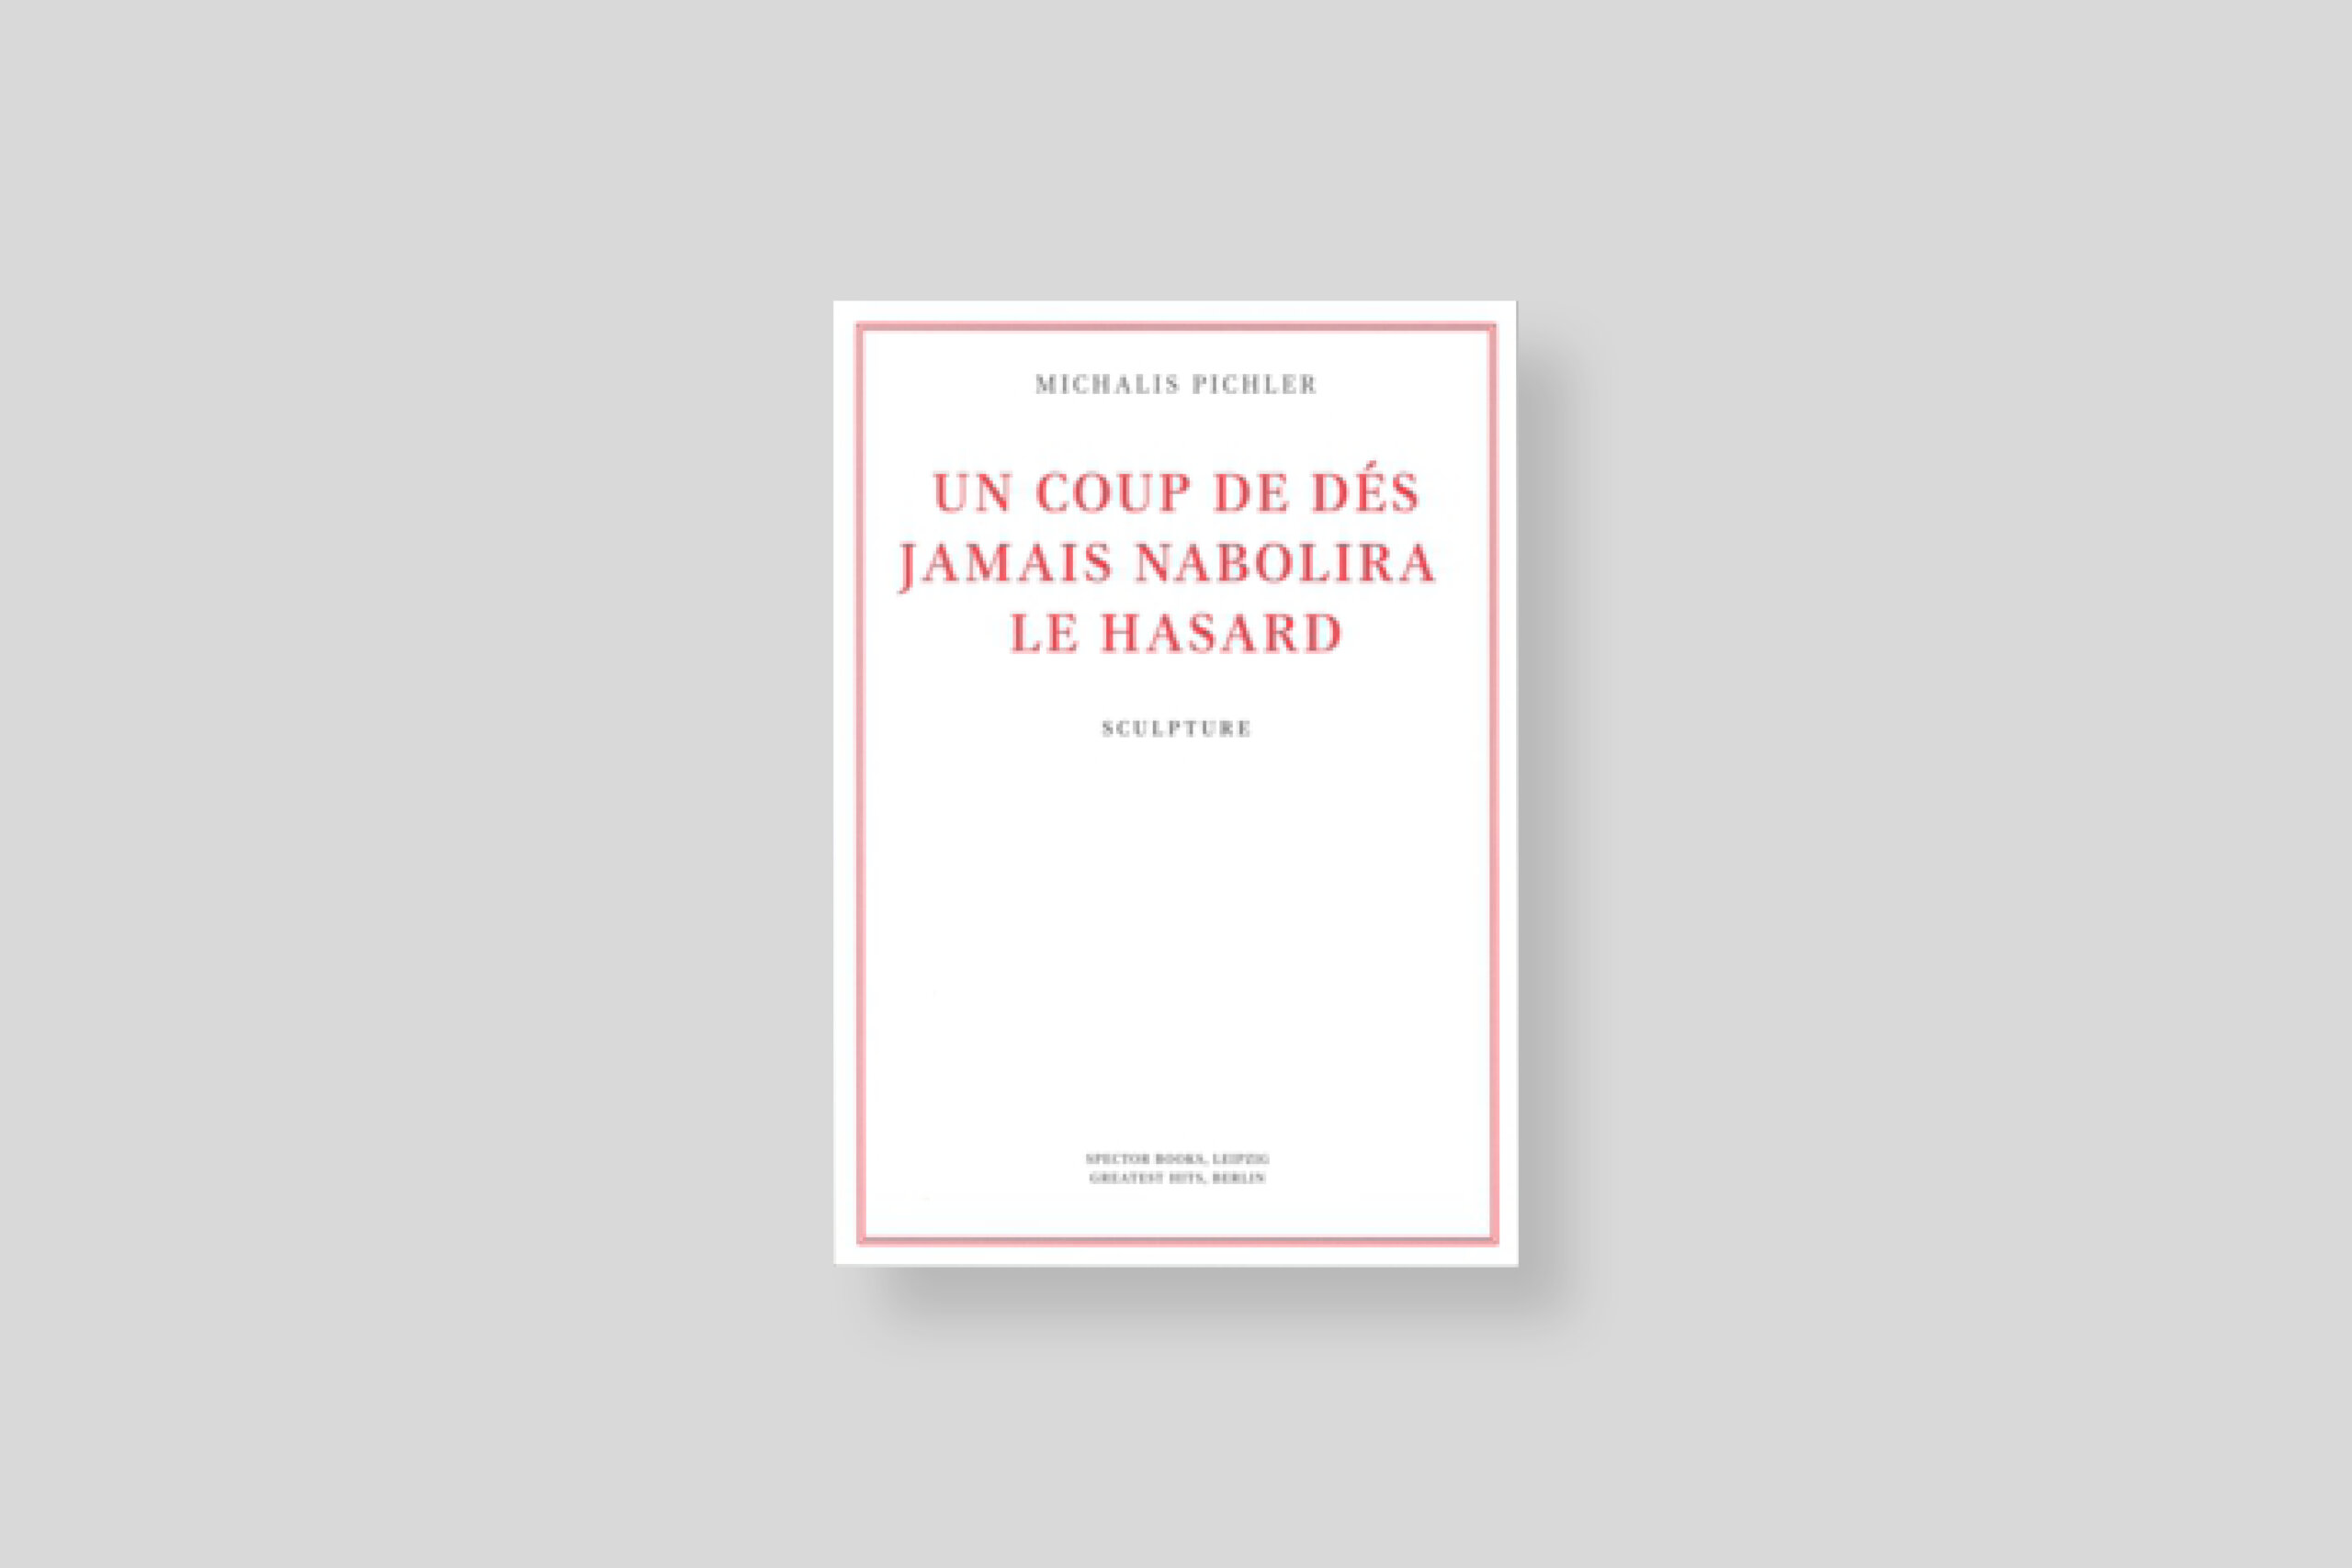 un-coup-de-dés-n-abolira-le-hasard-sculpture-pichler-spector-books-cover